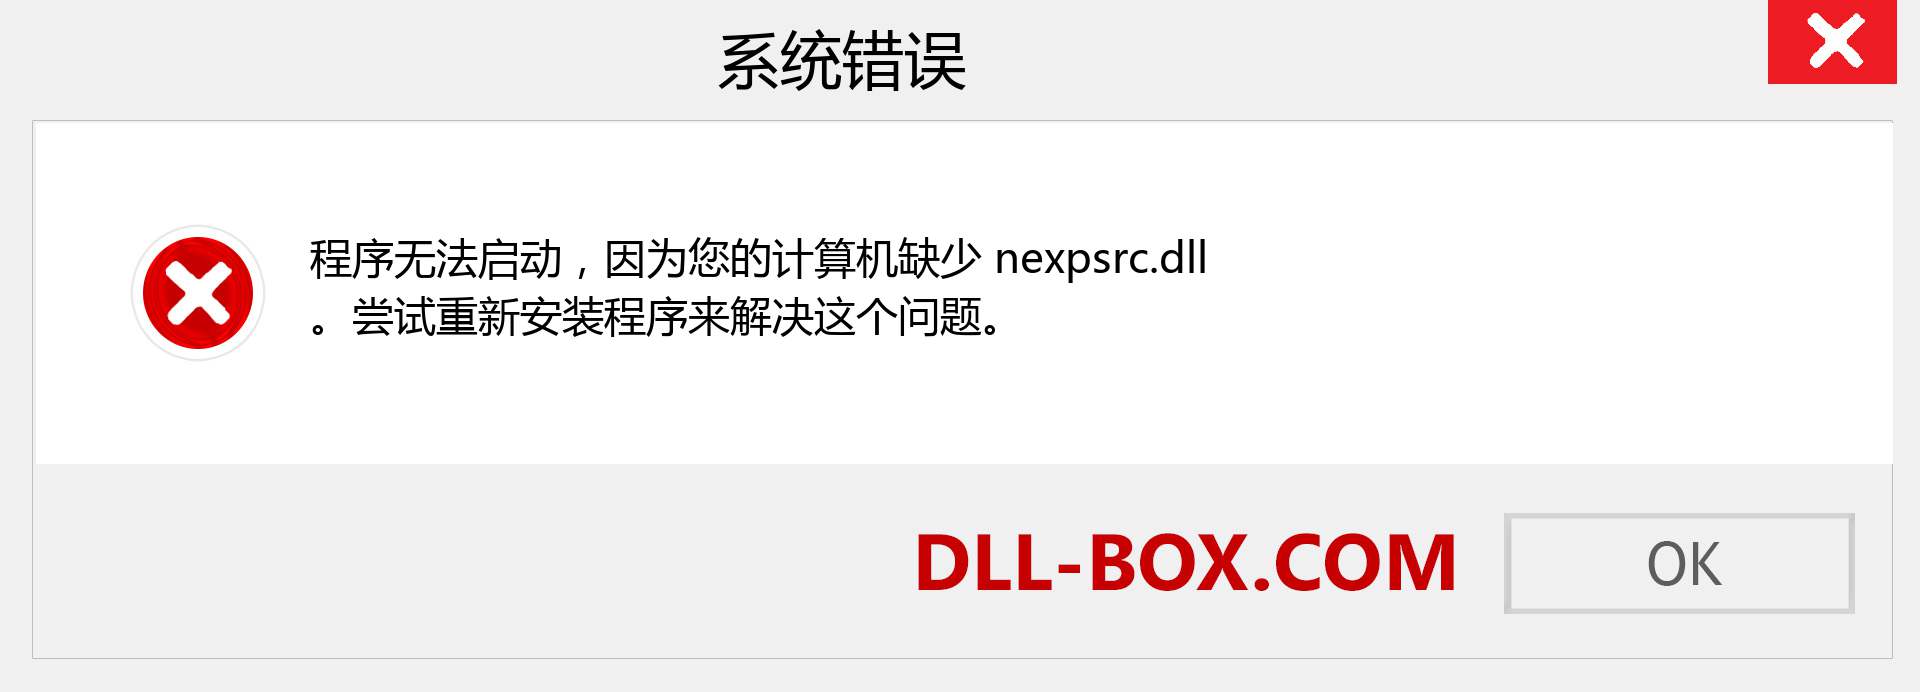 nexpsrc.dll 文件丢失？。 适用于 Windows 7、8、10 的下载 - 修复 Windows、照片、图像上的 nexpsrc dll 丢失错误